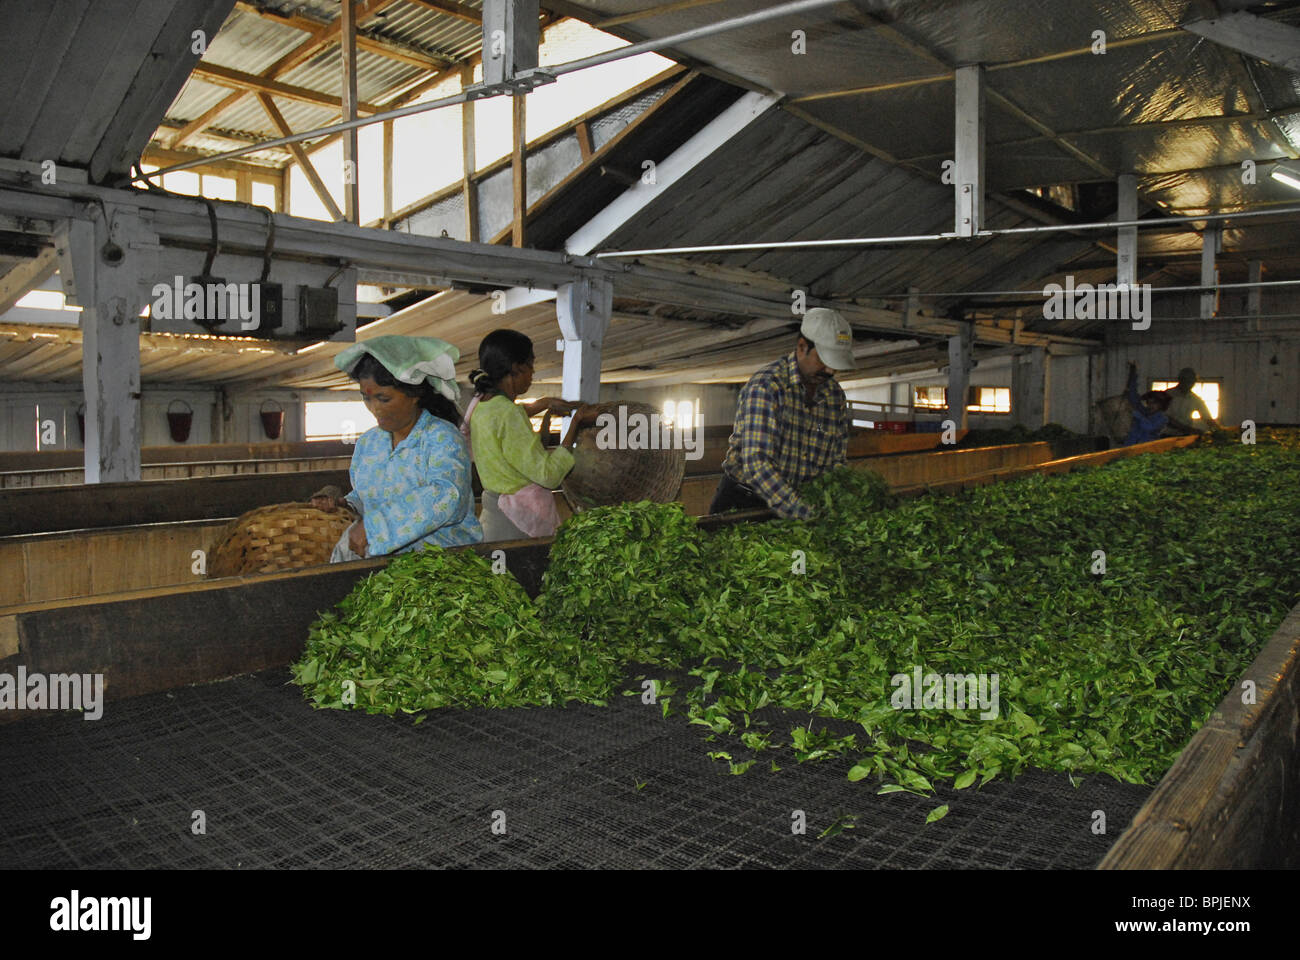 Les gens répandre les feuilles de thé pour le séchage, Makaibari, plantation de thé Darjeeling, West Bengal, Inde, Asie, Asie Banque D'Images